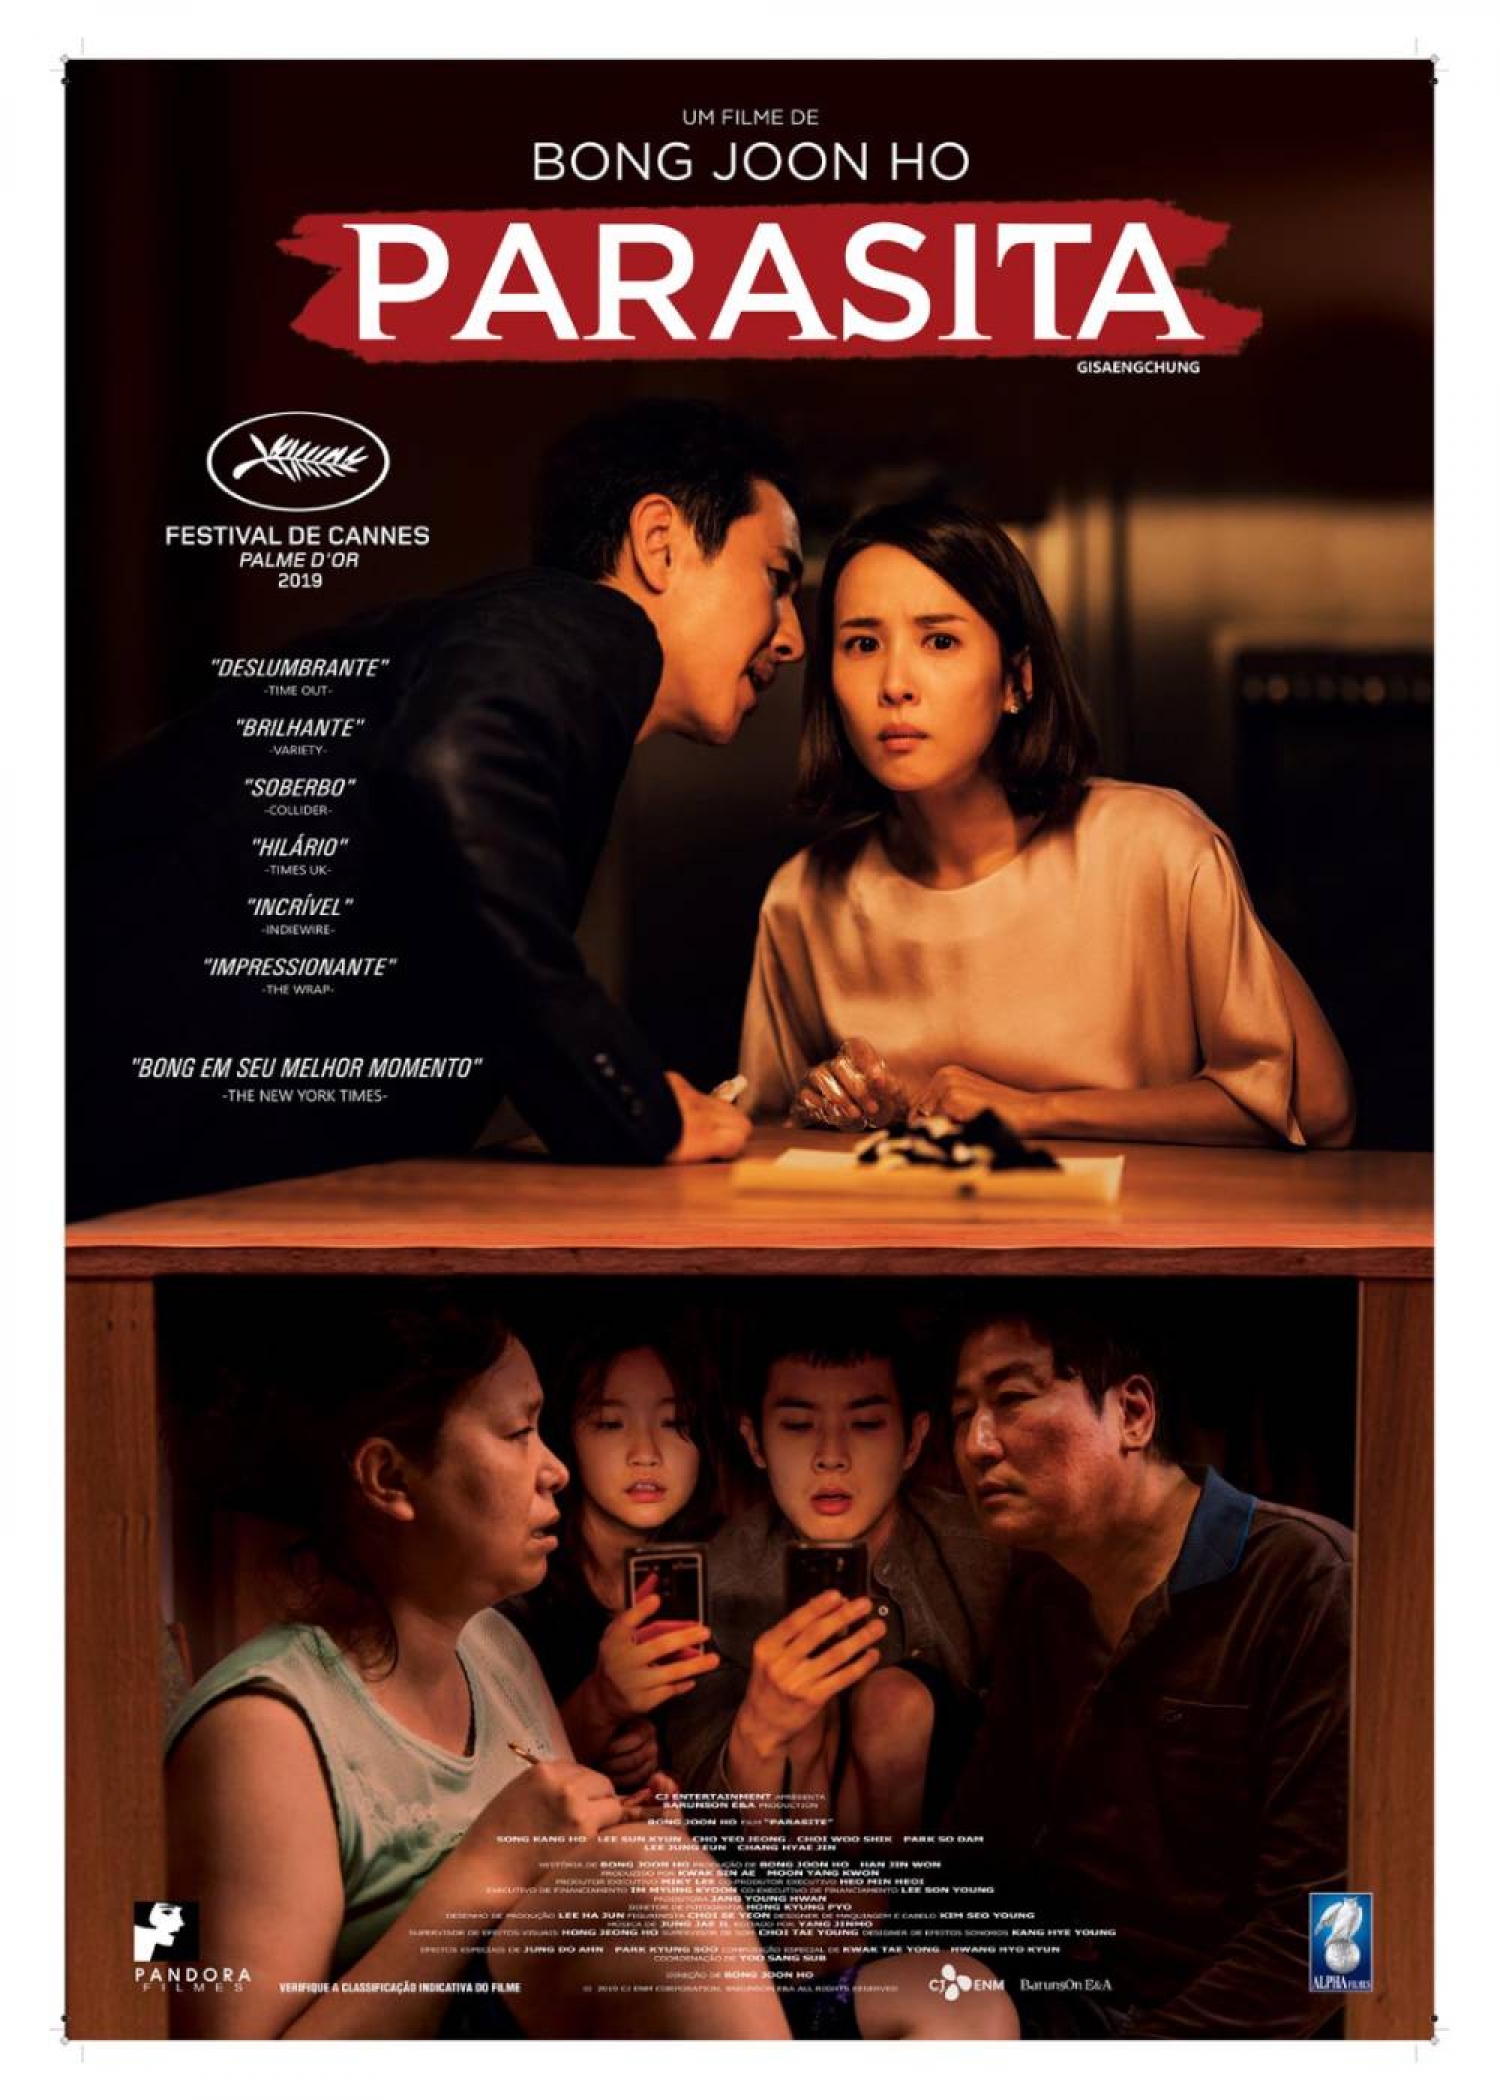 Parasita | Novo trailer legendado e sinopse - Café com Filme